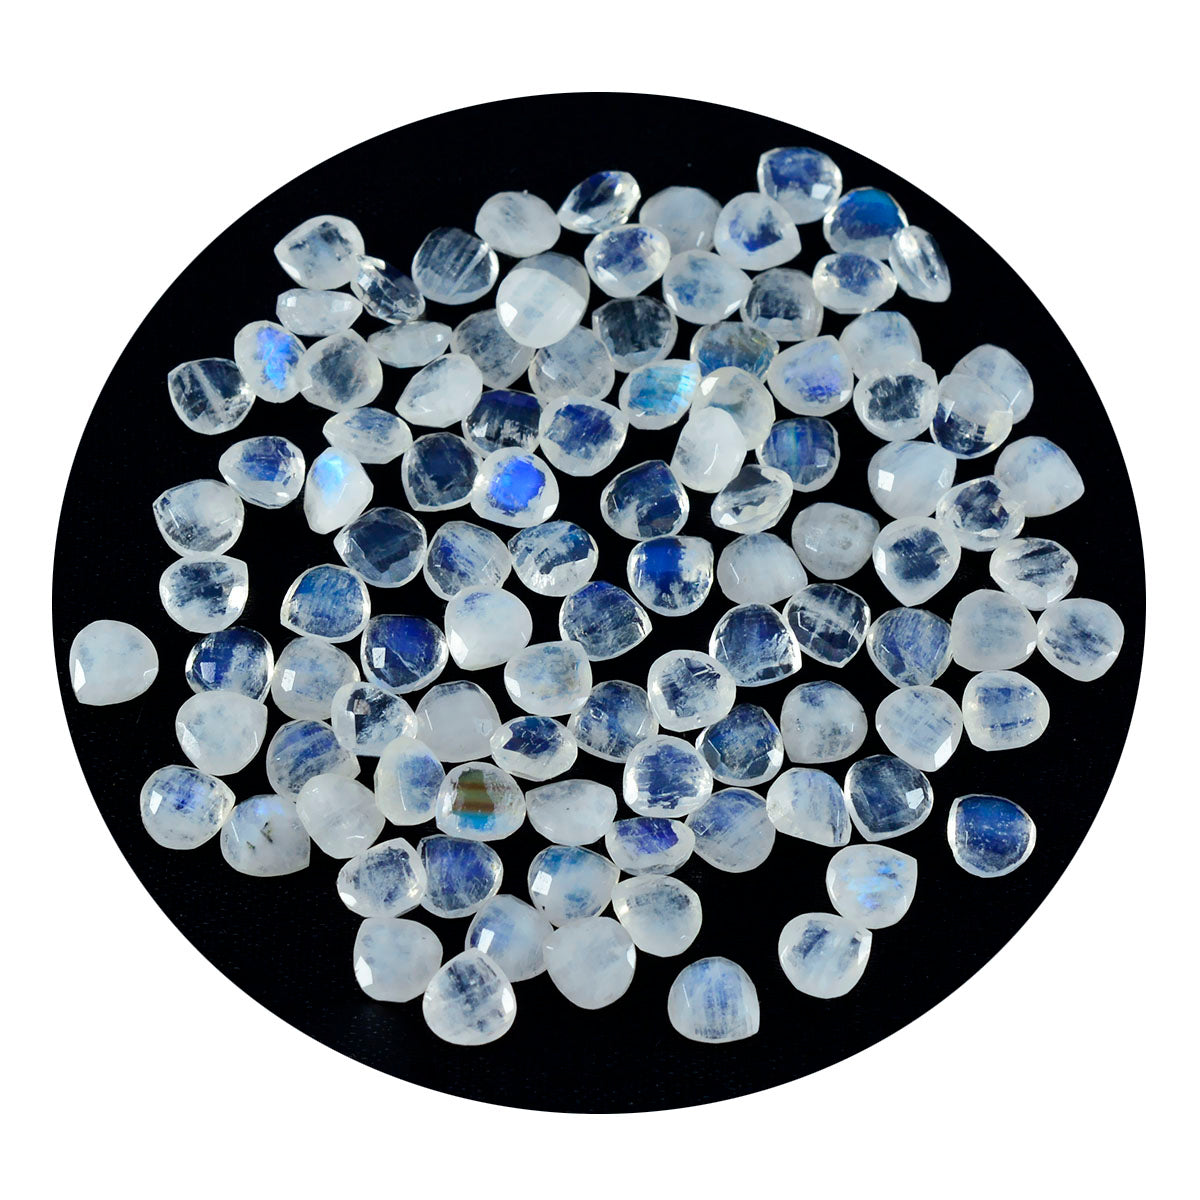 Riyogems 1 Stück weißer Regenbogen-Mondstein, facettiert, 5 x 5 mm, Herzform, wunderschöner Qualitäts-Edelstein